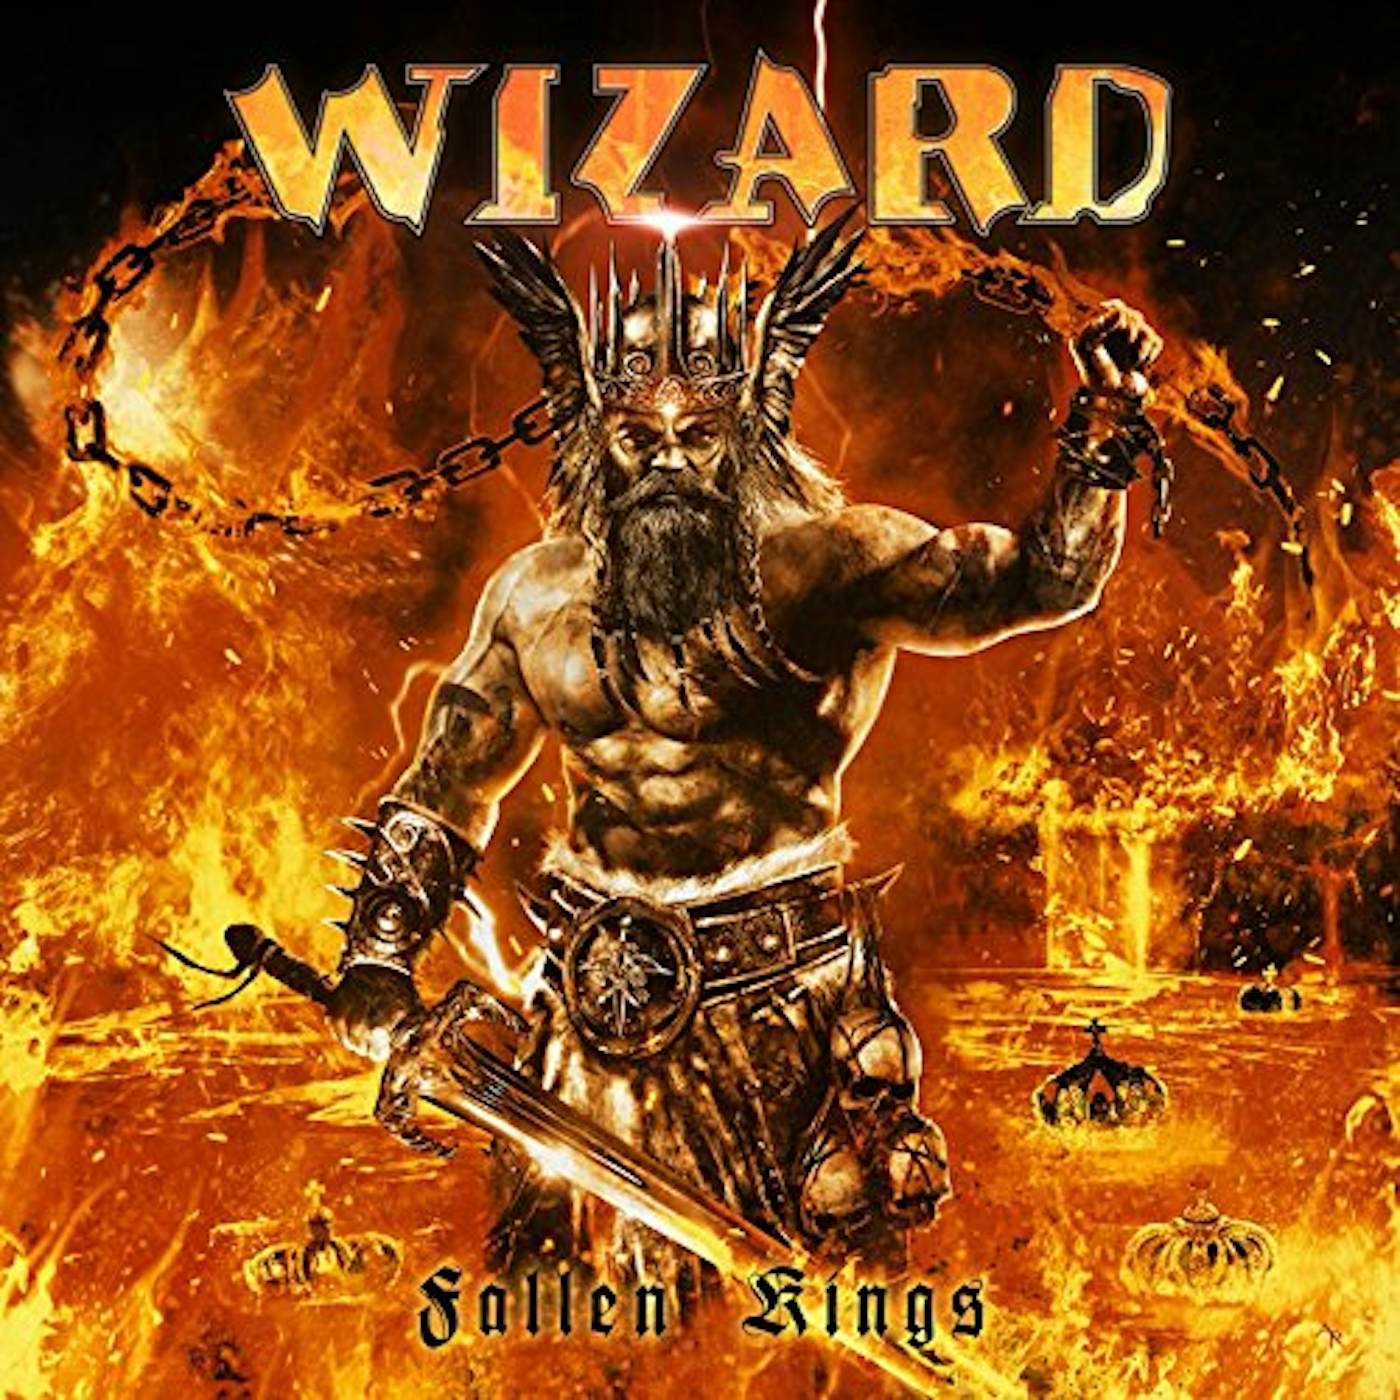 Wizard FALLEN KINGS CD